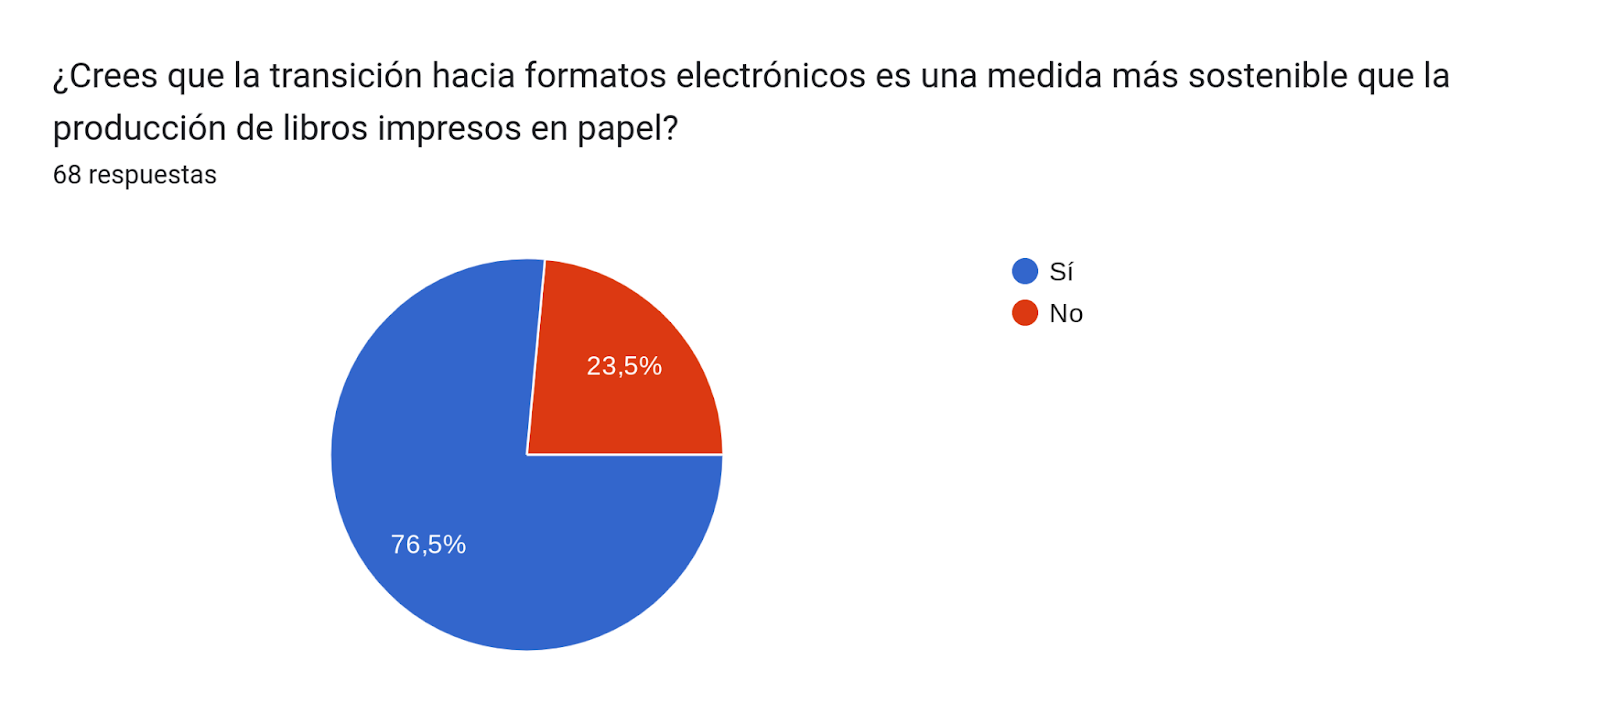 Gráfico de respuestas de formularios. Título de la pregunta: ¿Crees que la transición hacia formatos electrónicos es una medida más sostenible que la producción de libros impresos en papel?
. Número de respuestas: 68 respuestas.